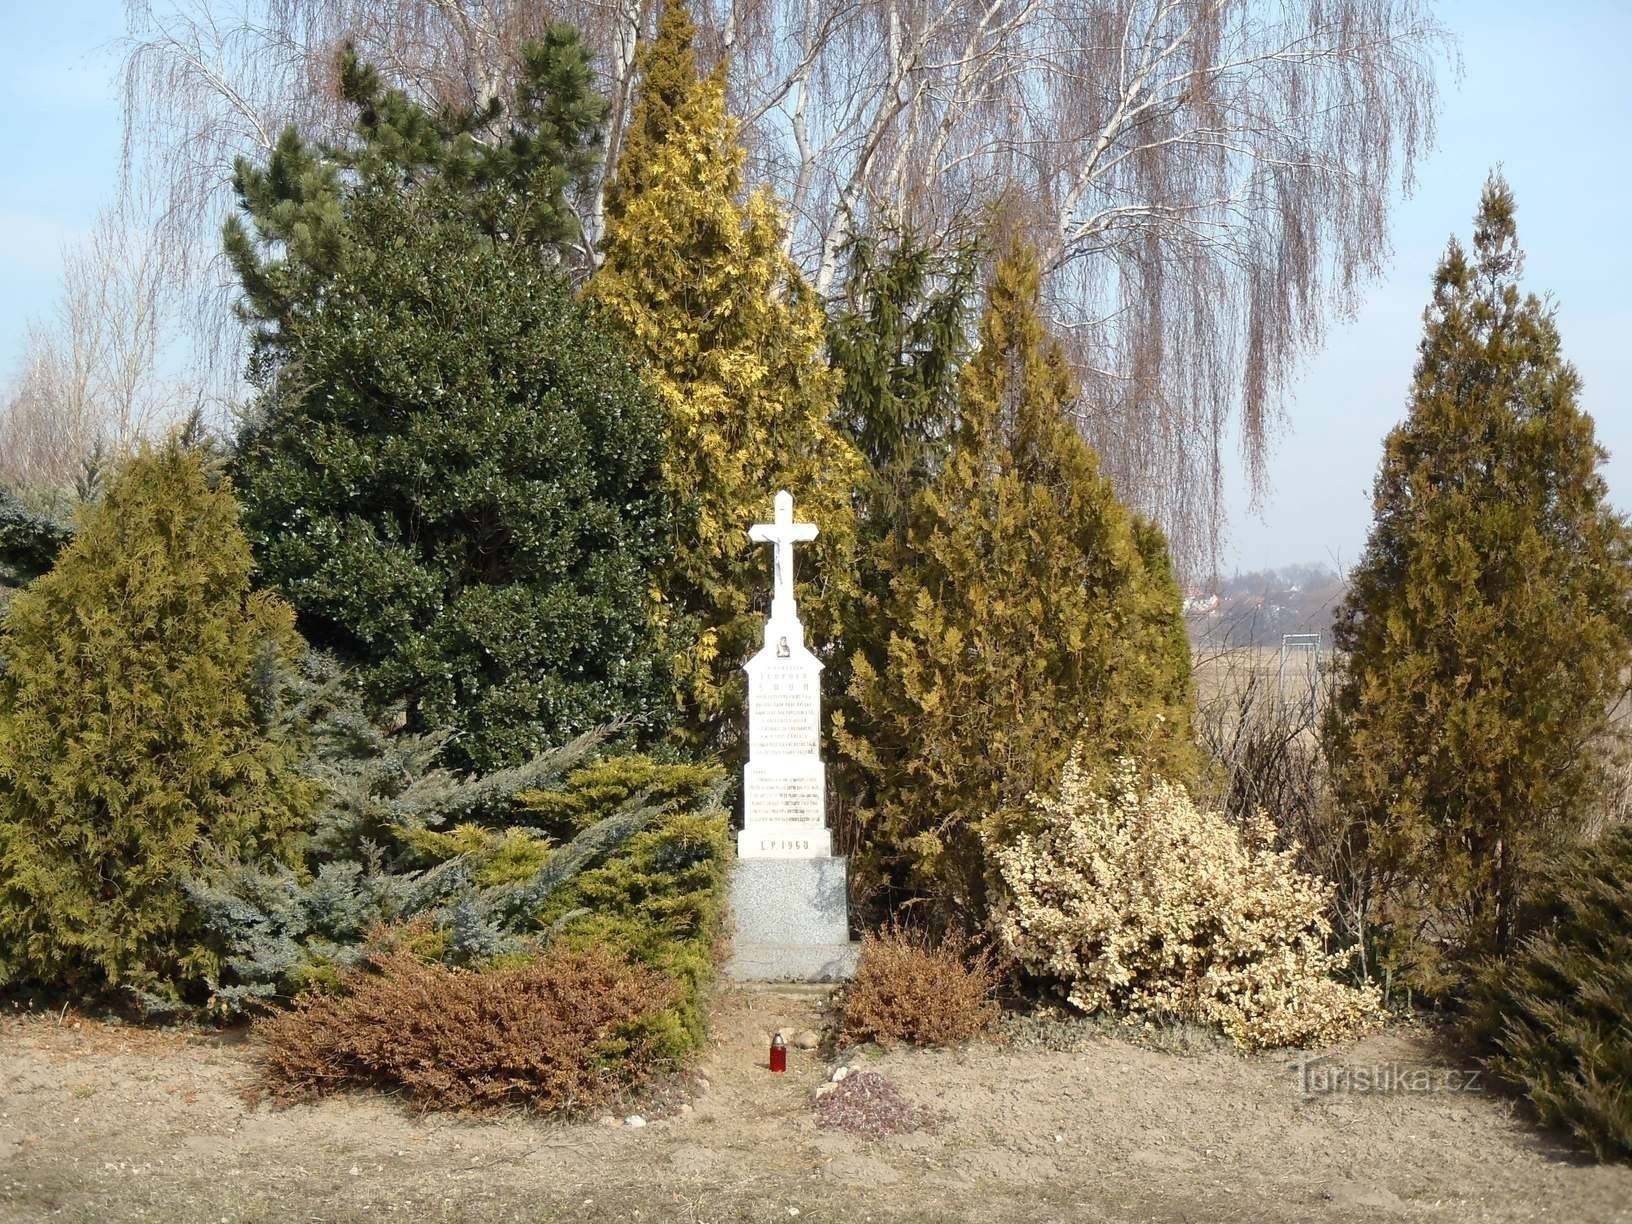 Đài tưởng niệm Leopold Šrom ở Chrlice - 10.3.2012